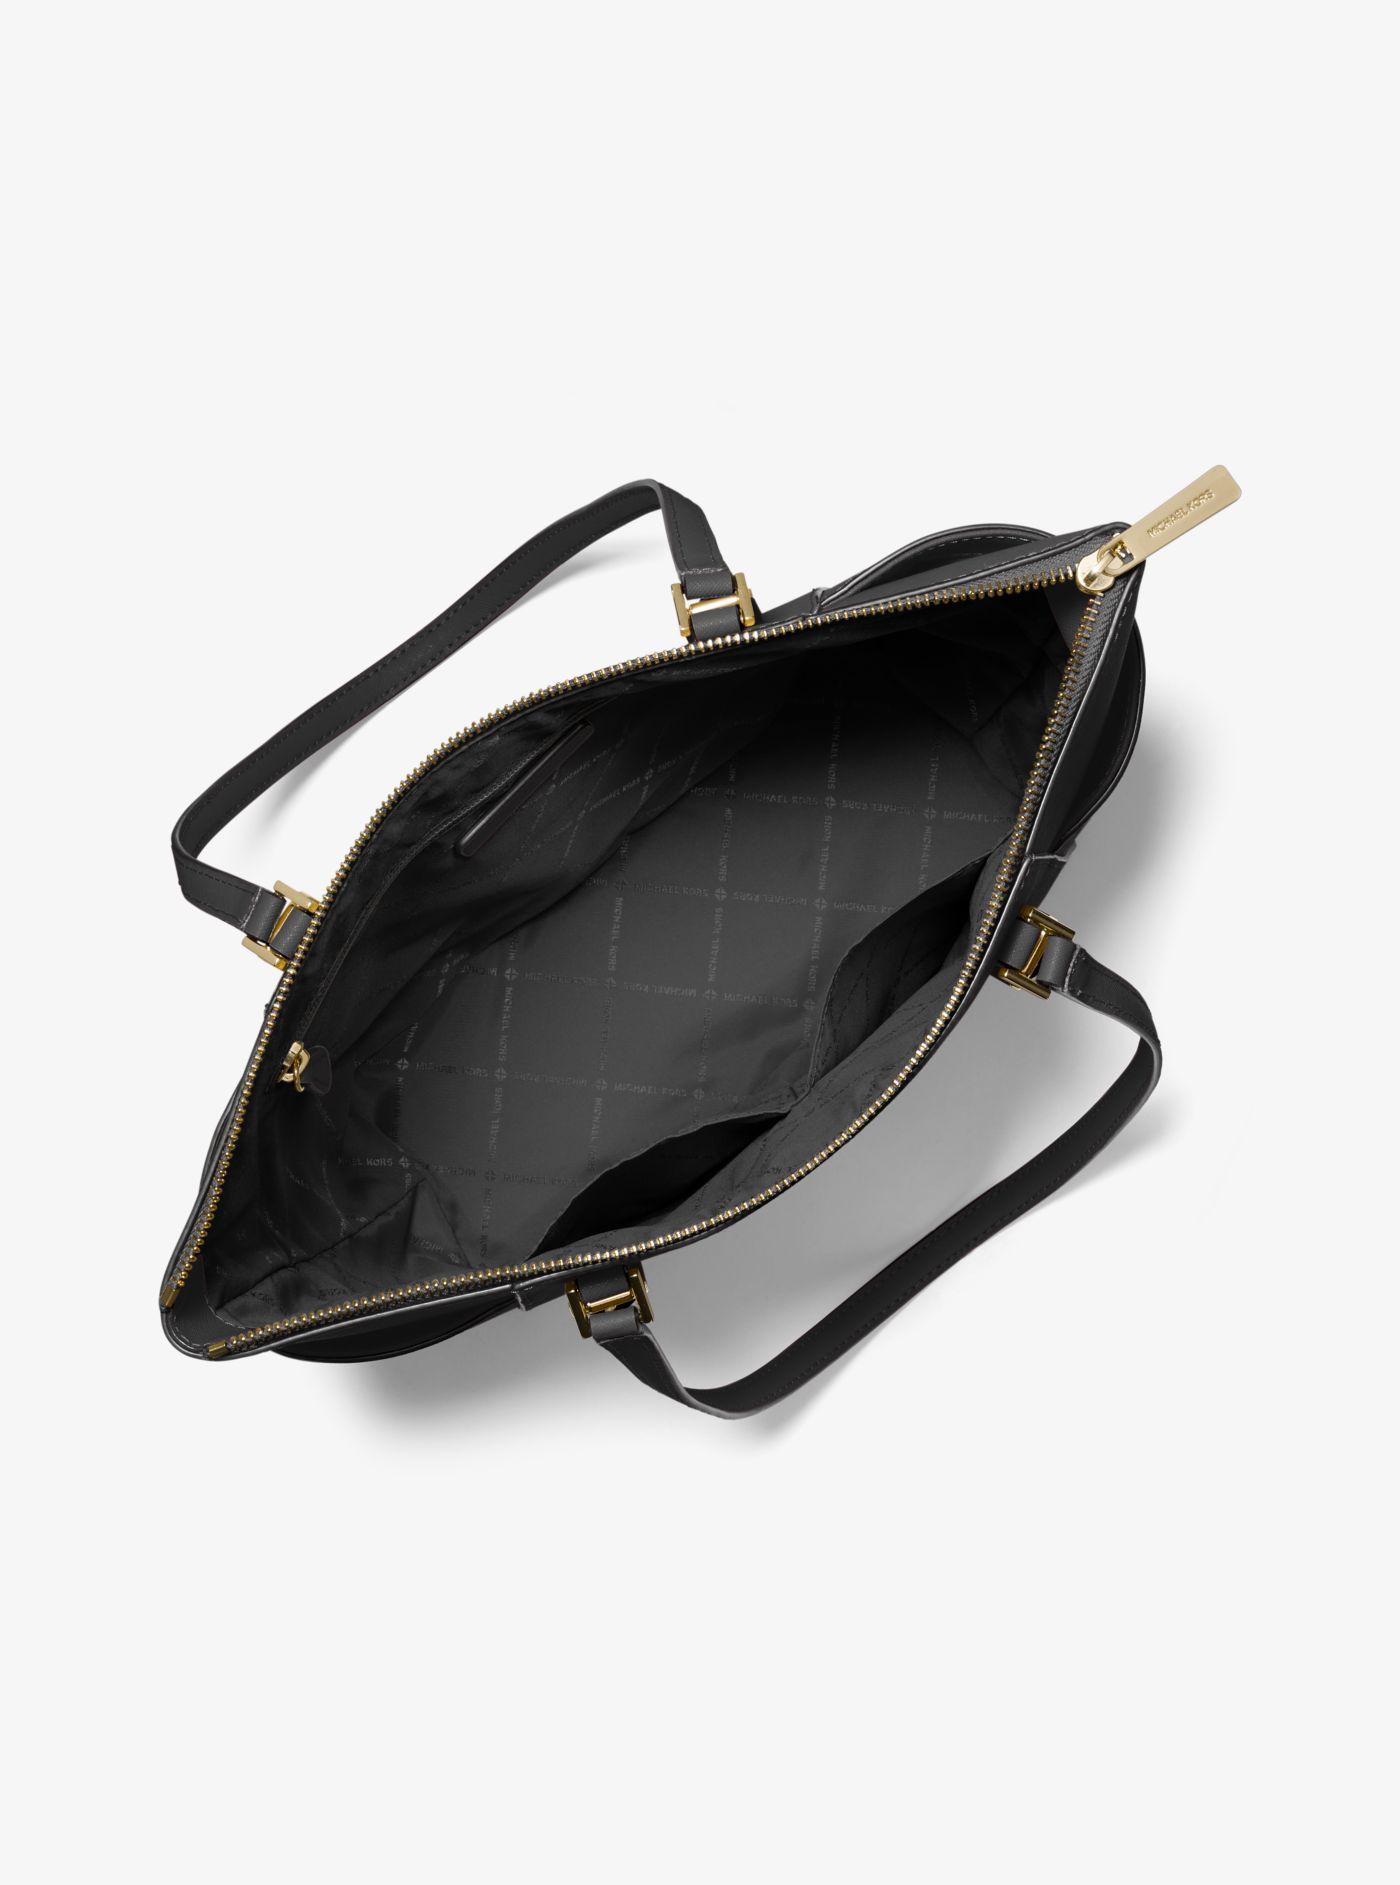 Black Royce 'Charlotte' Saffiano Tote Bag Saffiano Italian Cowhide Leather 